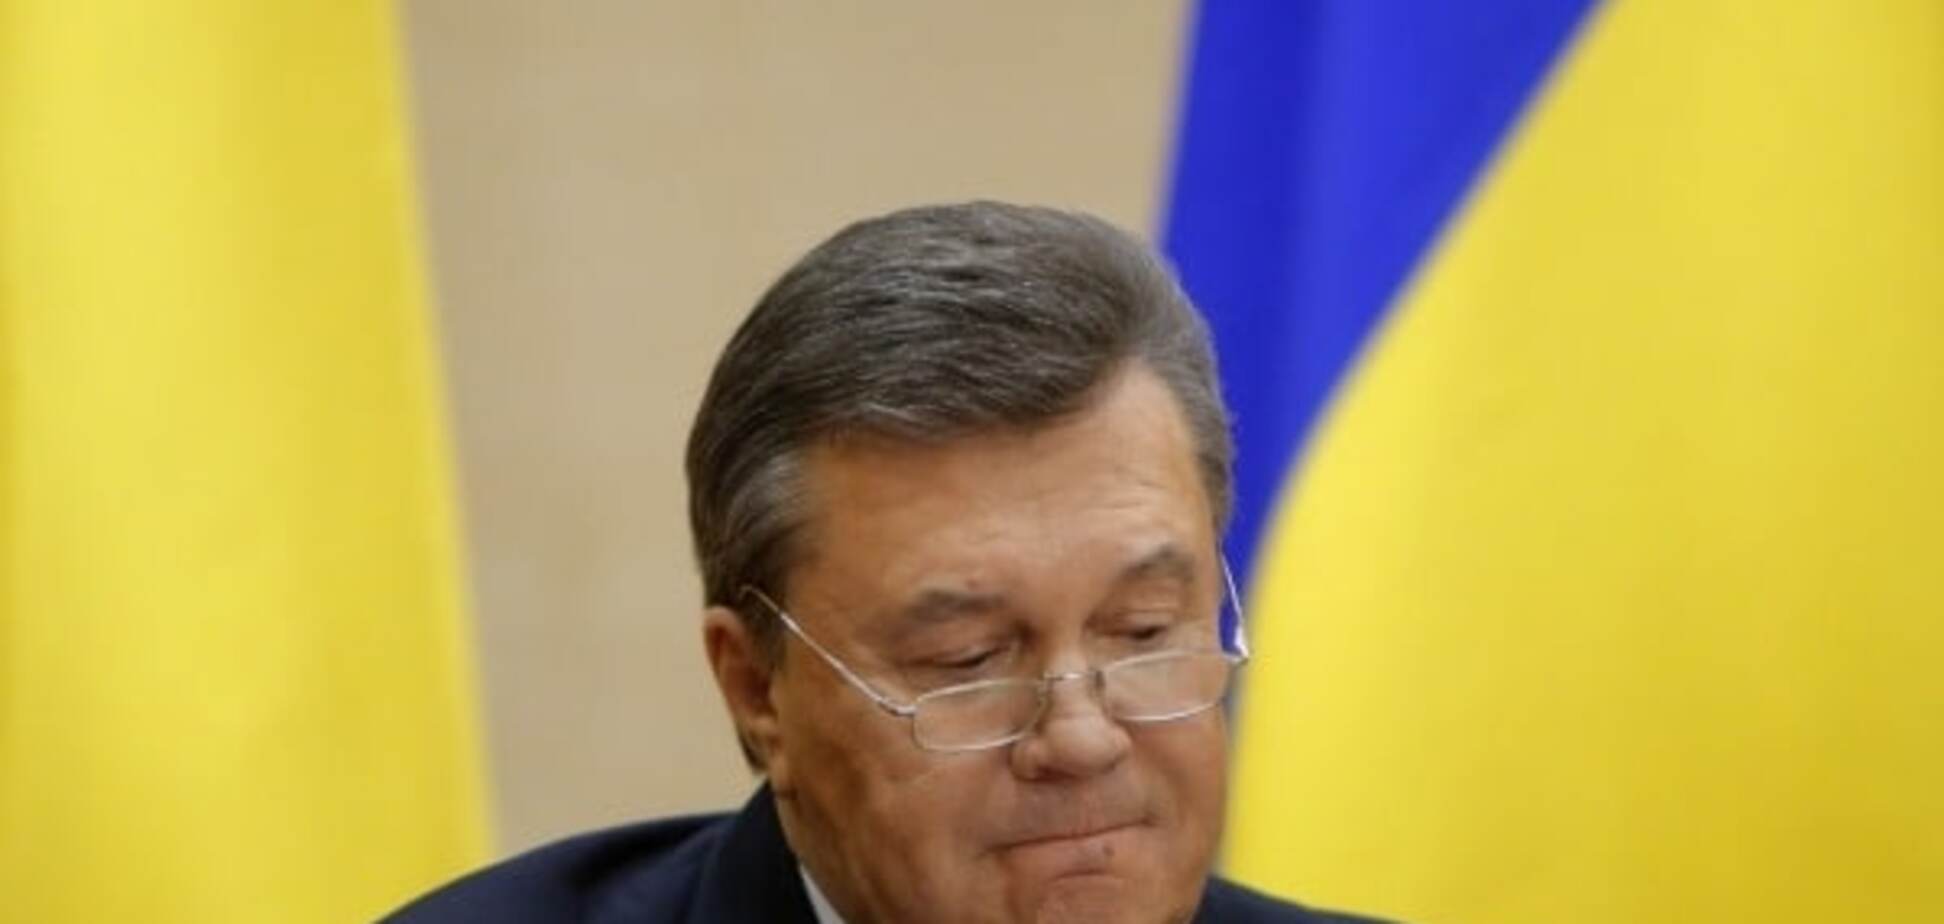 Росія ніколи не видасть нам Януковича - Порошенко